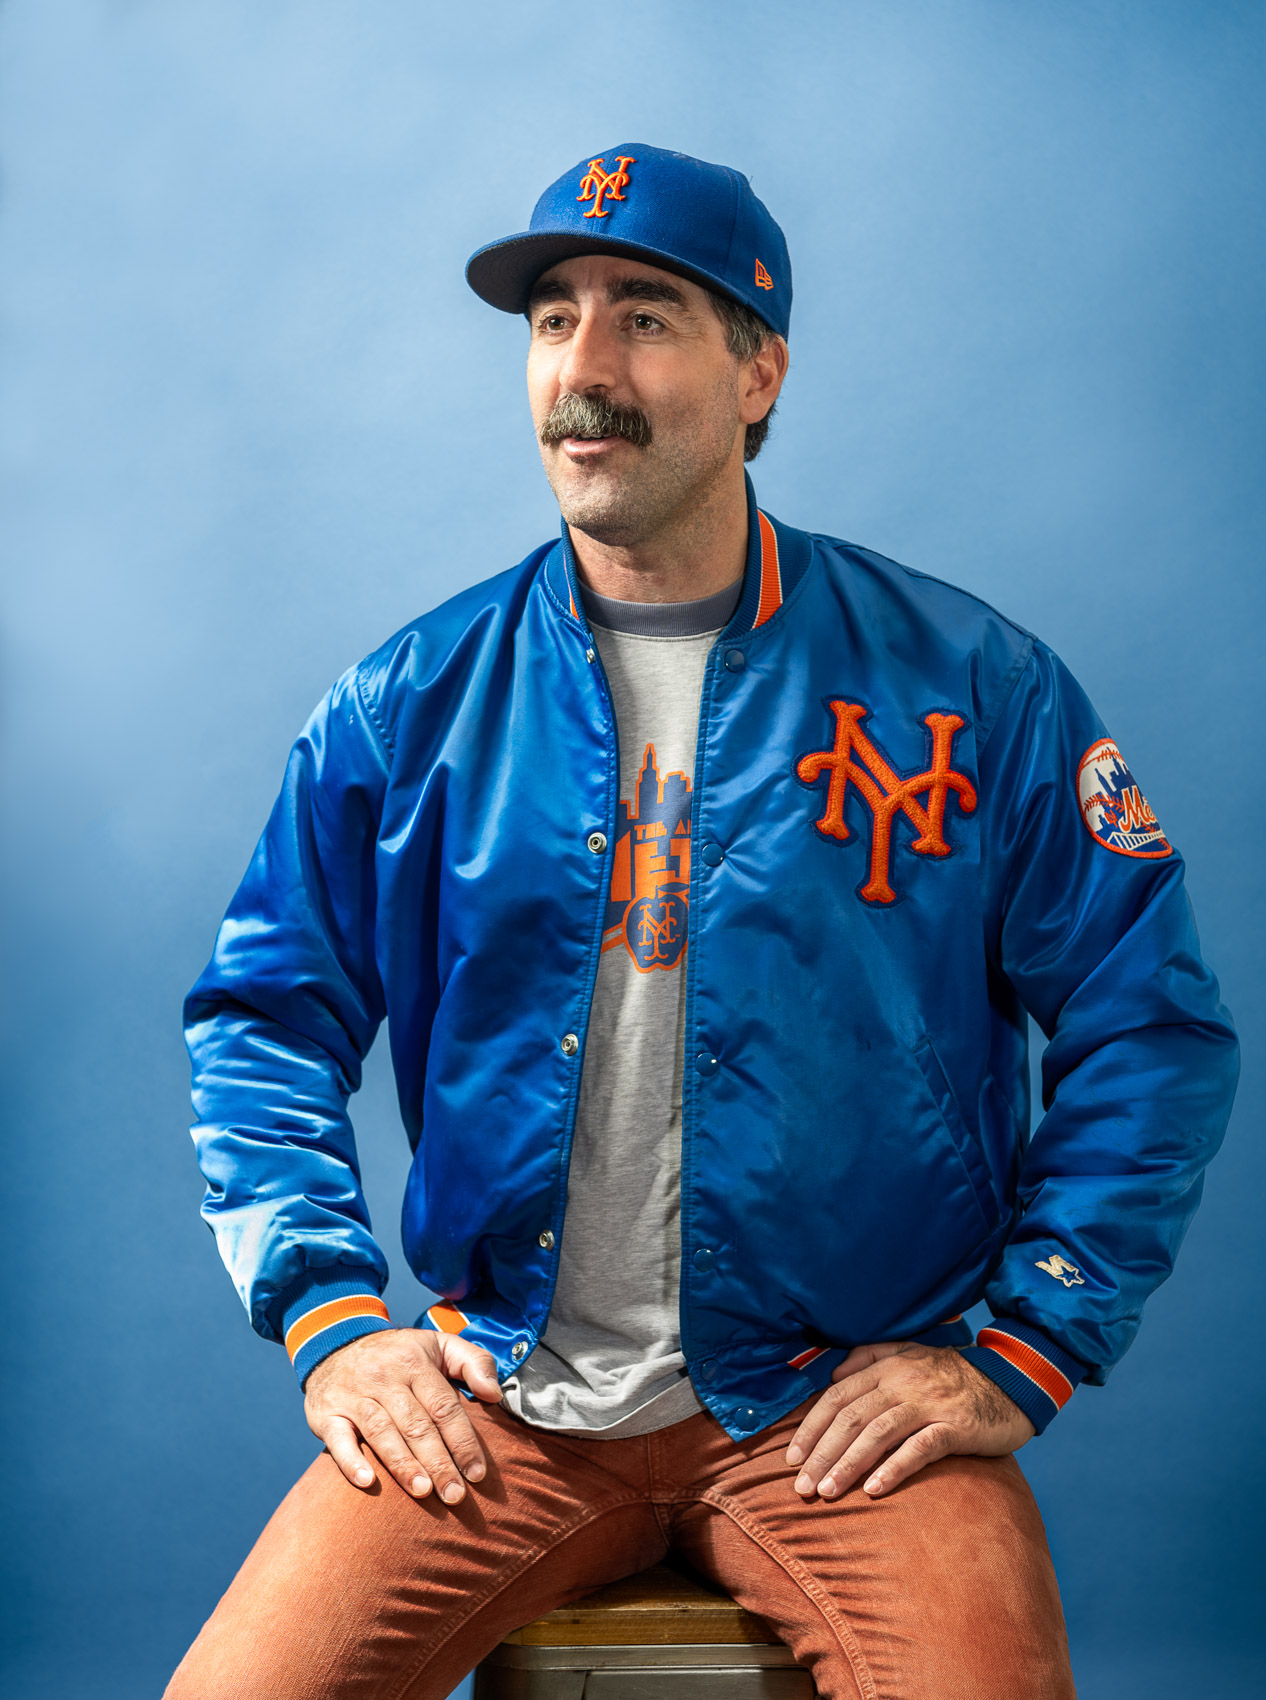 Portrait of comedian and Mets fan Joe Praino by Los Angeles Portrait Photographer David Zentz